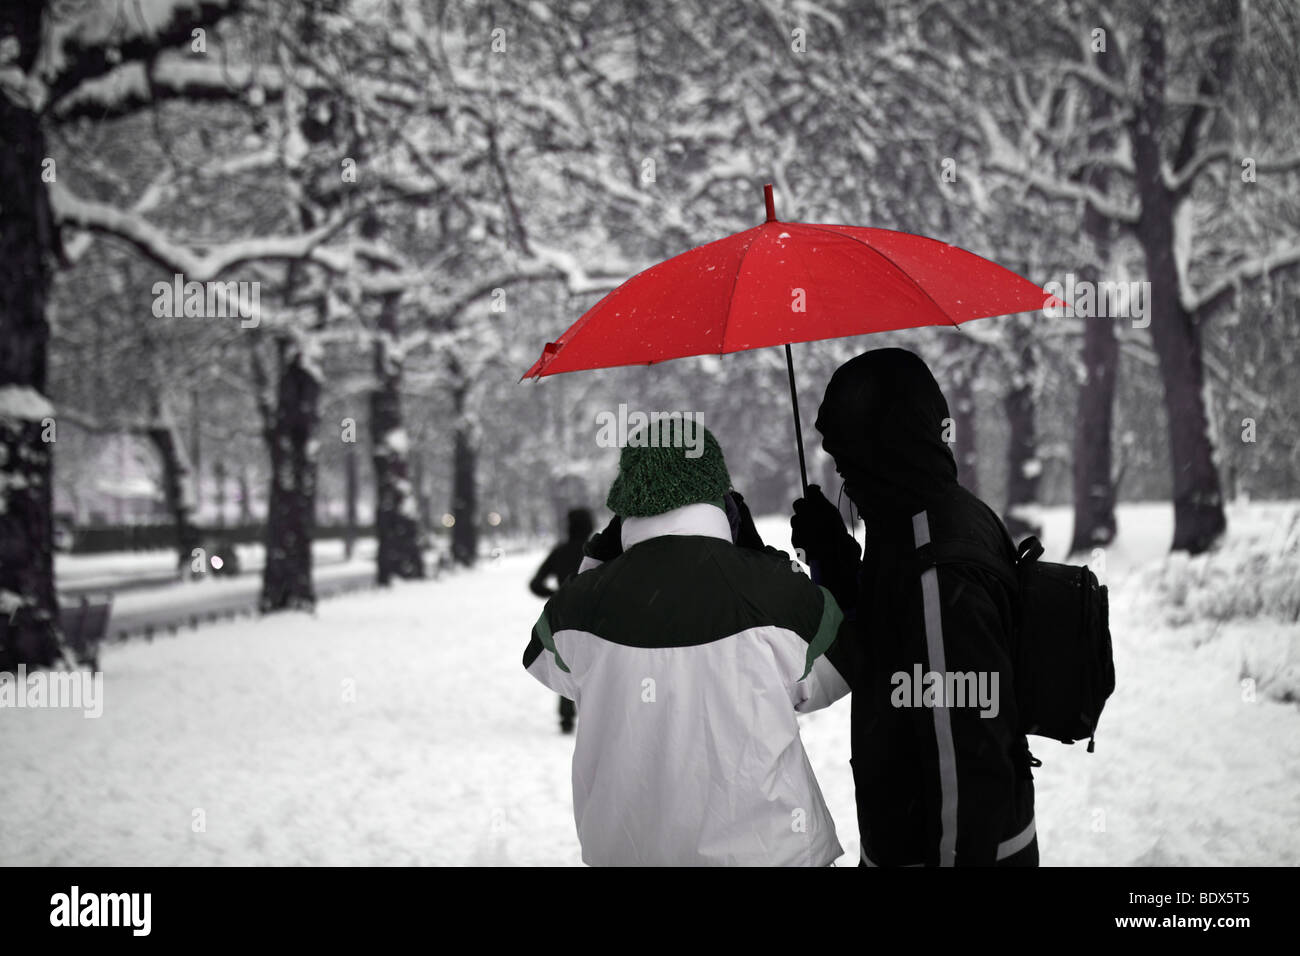 Londres : NEIGE COUPLE AVEC parapluie rouge Banque D'Images